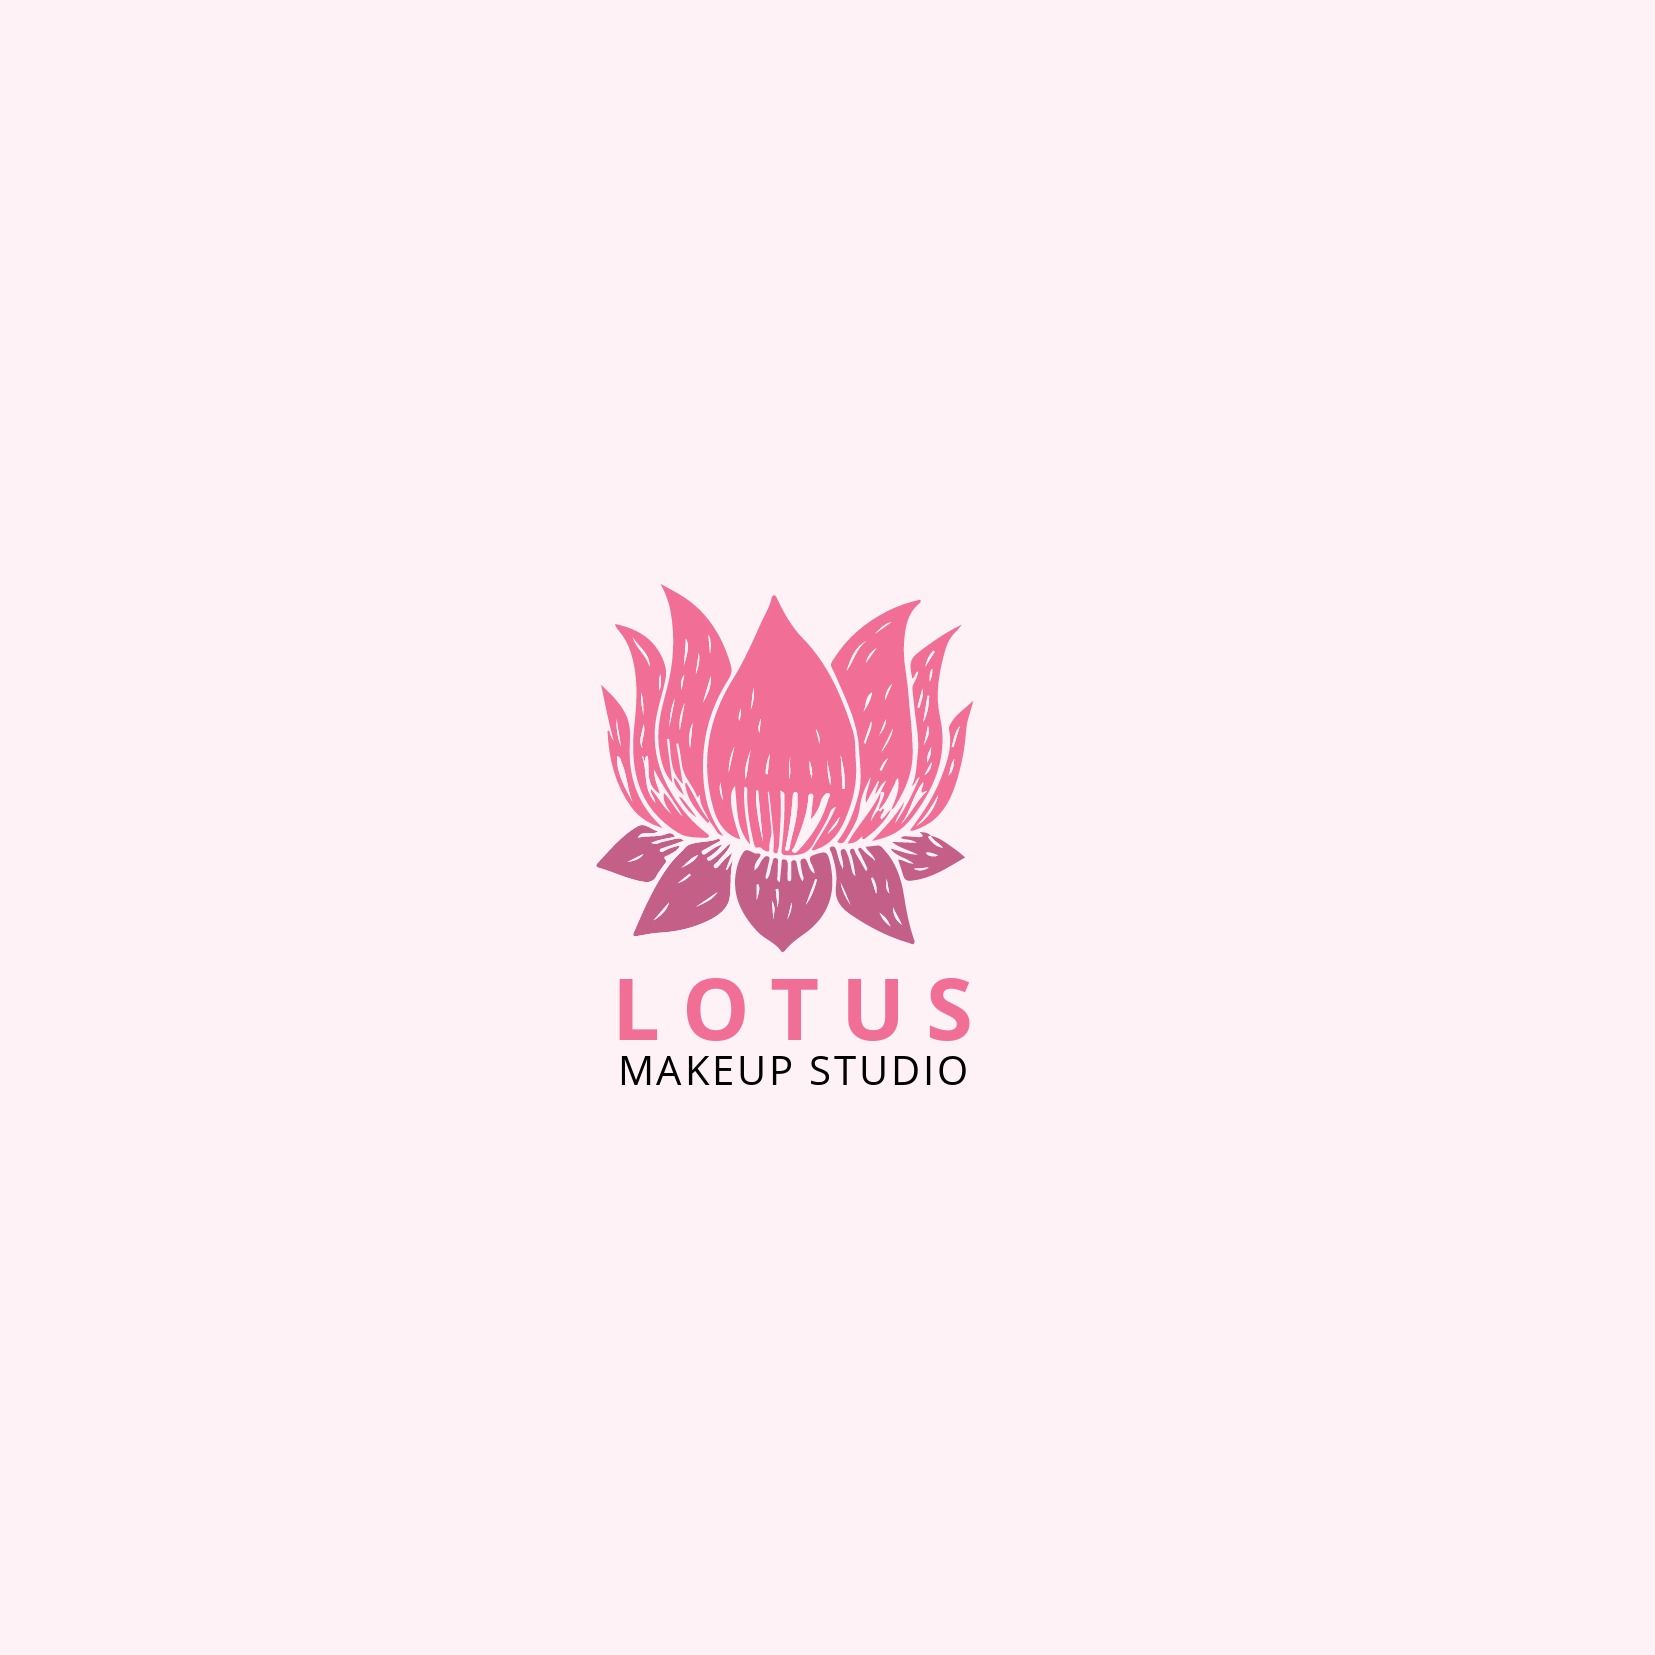 Logo du studio de maquillage Lotus sur fond blanc - La police Open Sans est ouverte et lisible - Image